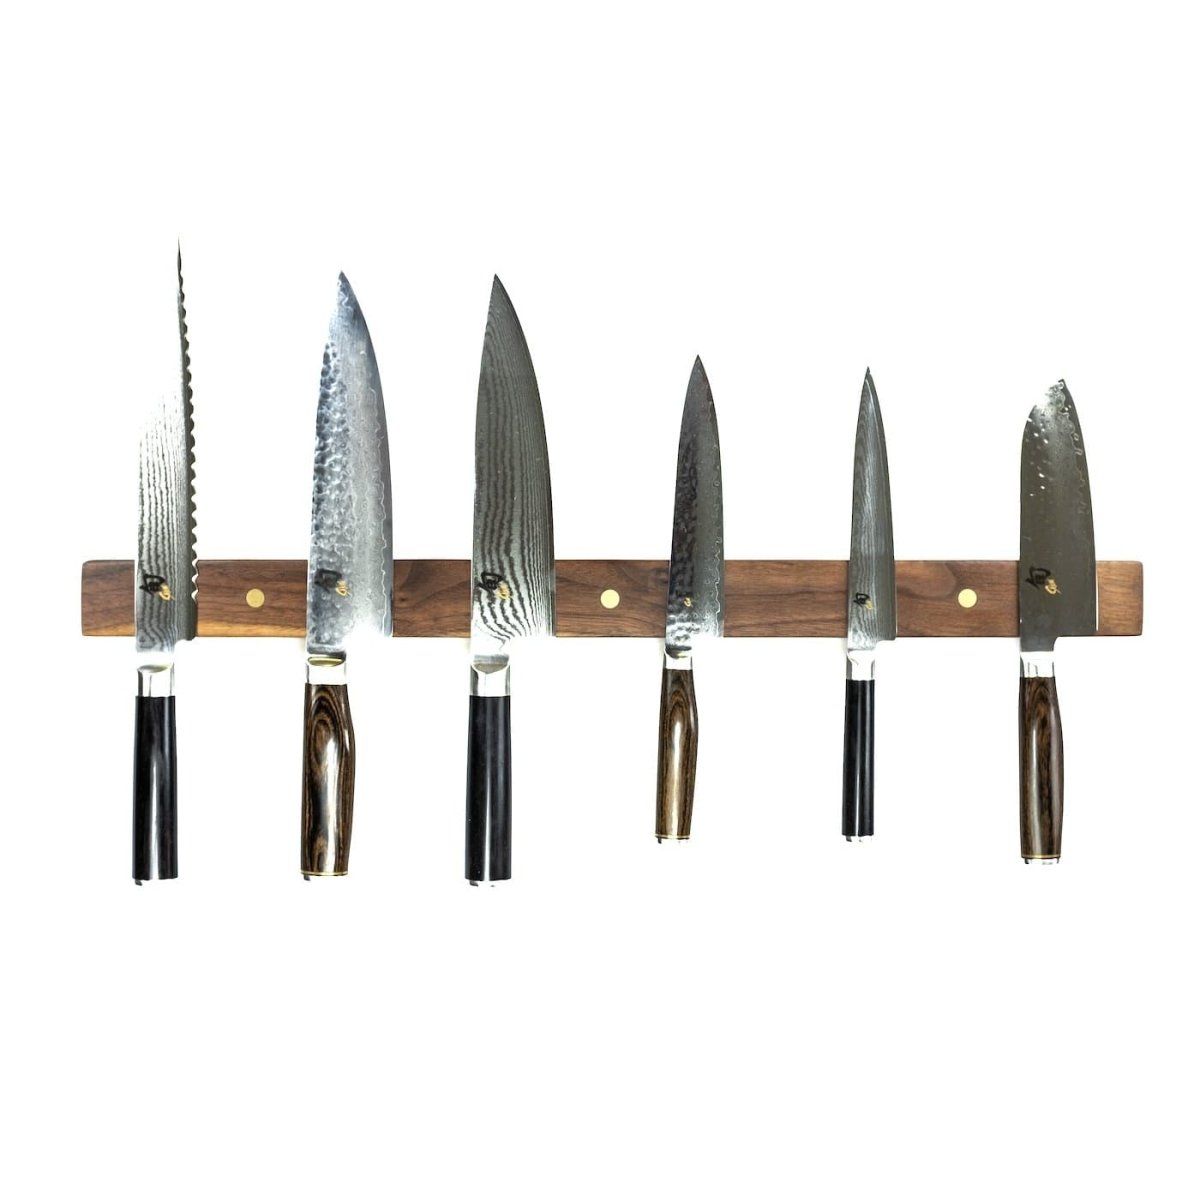 Rune-Jakobsen Woodworks 'Knifeboard Classic' dyb knivmagnet_8 by Rune-Jakobsen Design